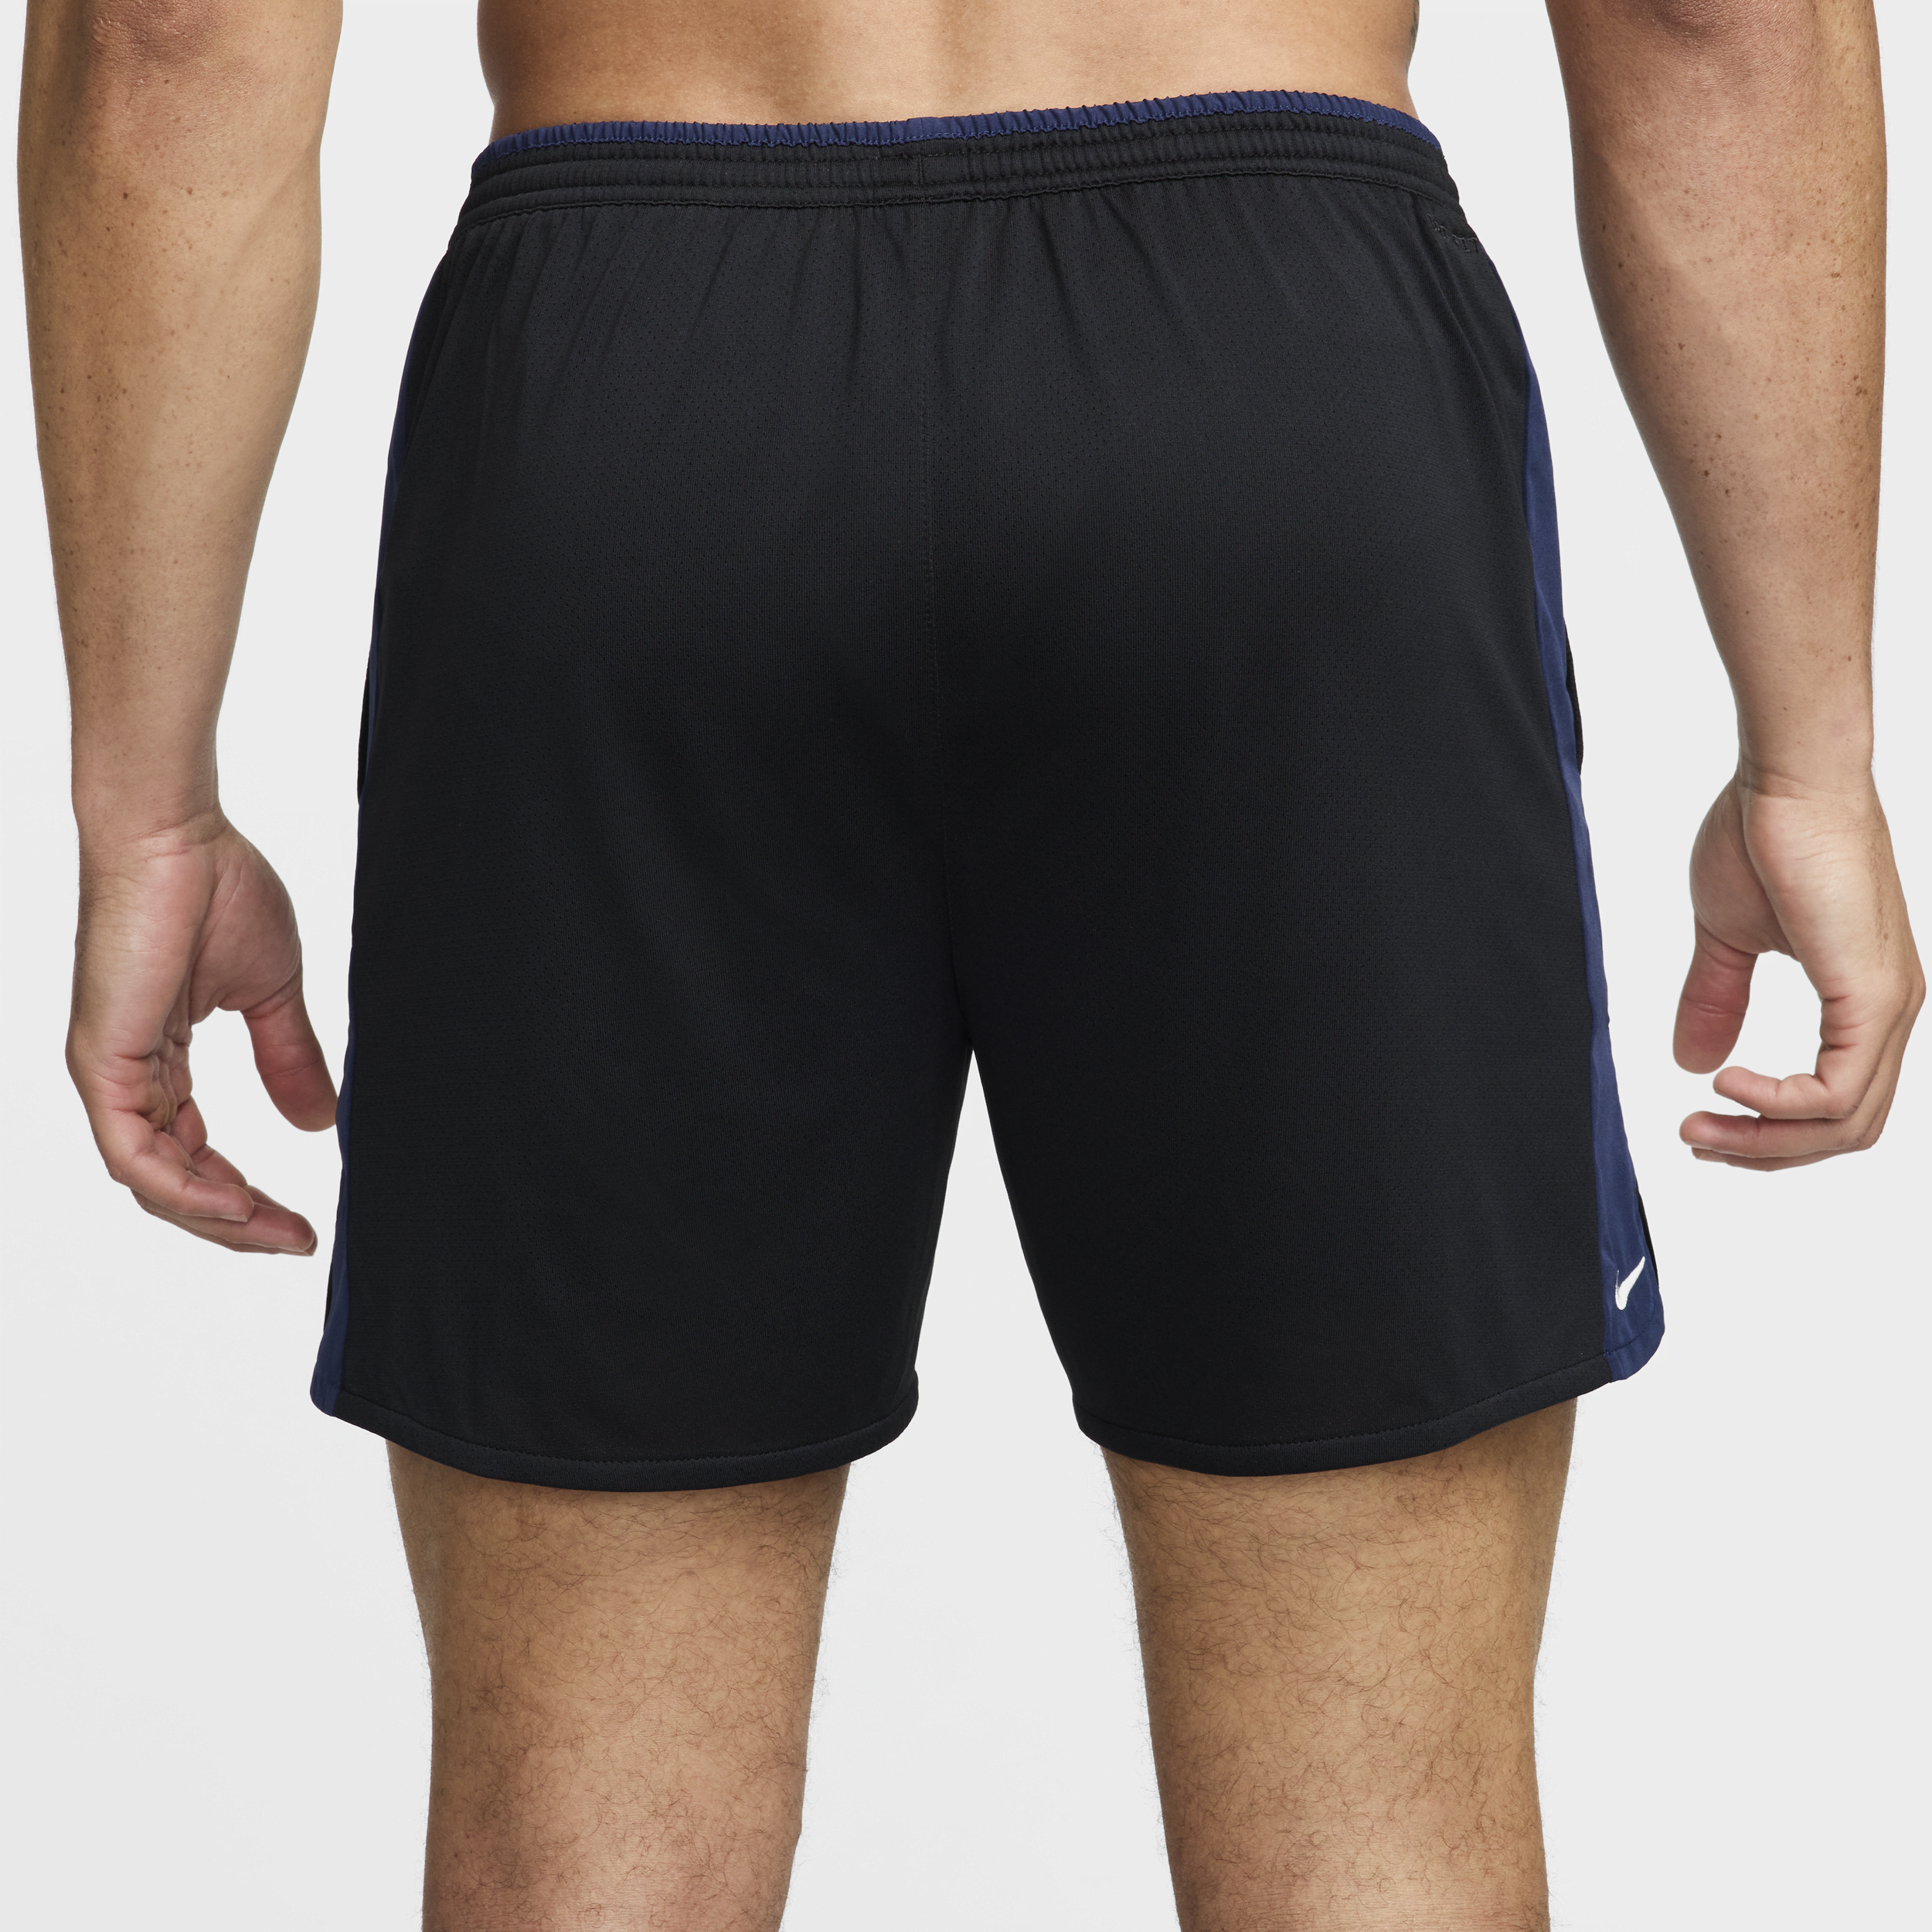 Nike Track Club Dri-FIT hardloopshorts met binnenbroek voor heren (13 cm) Zwart